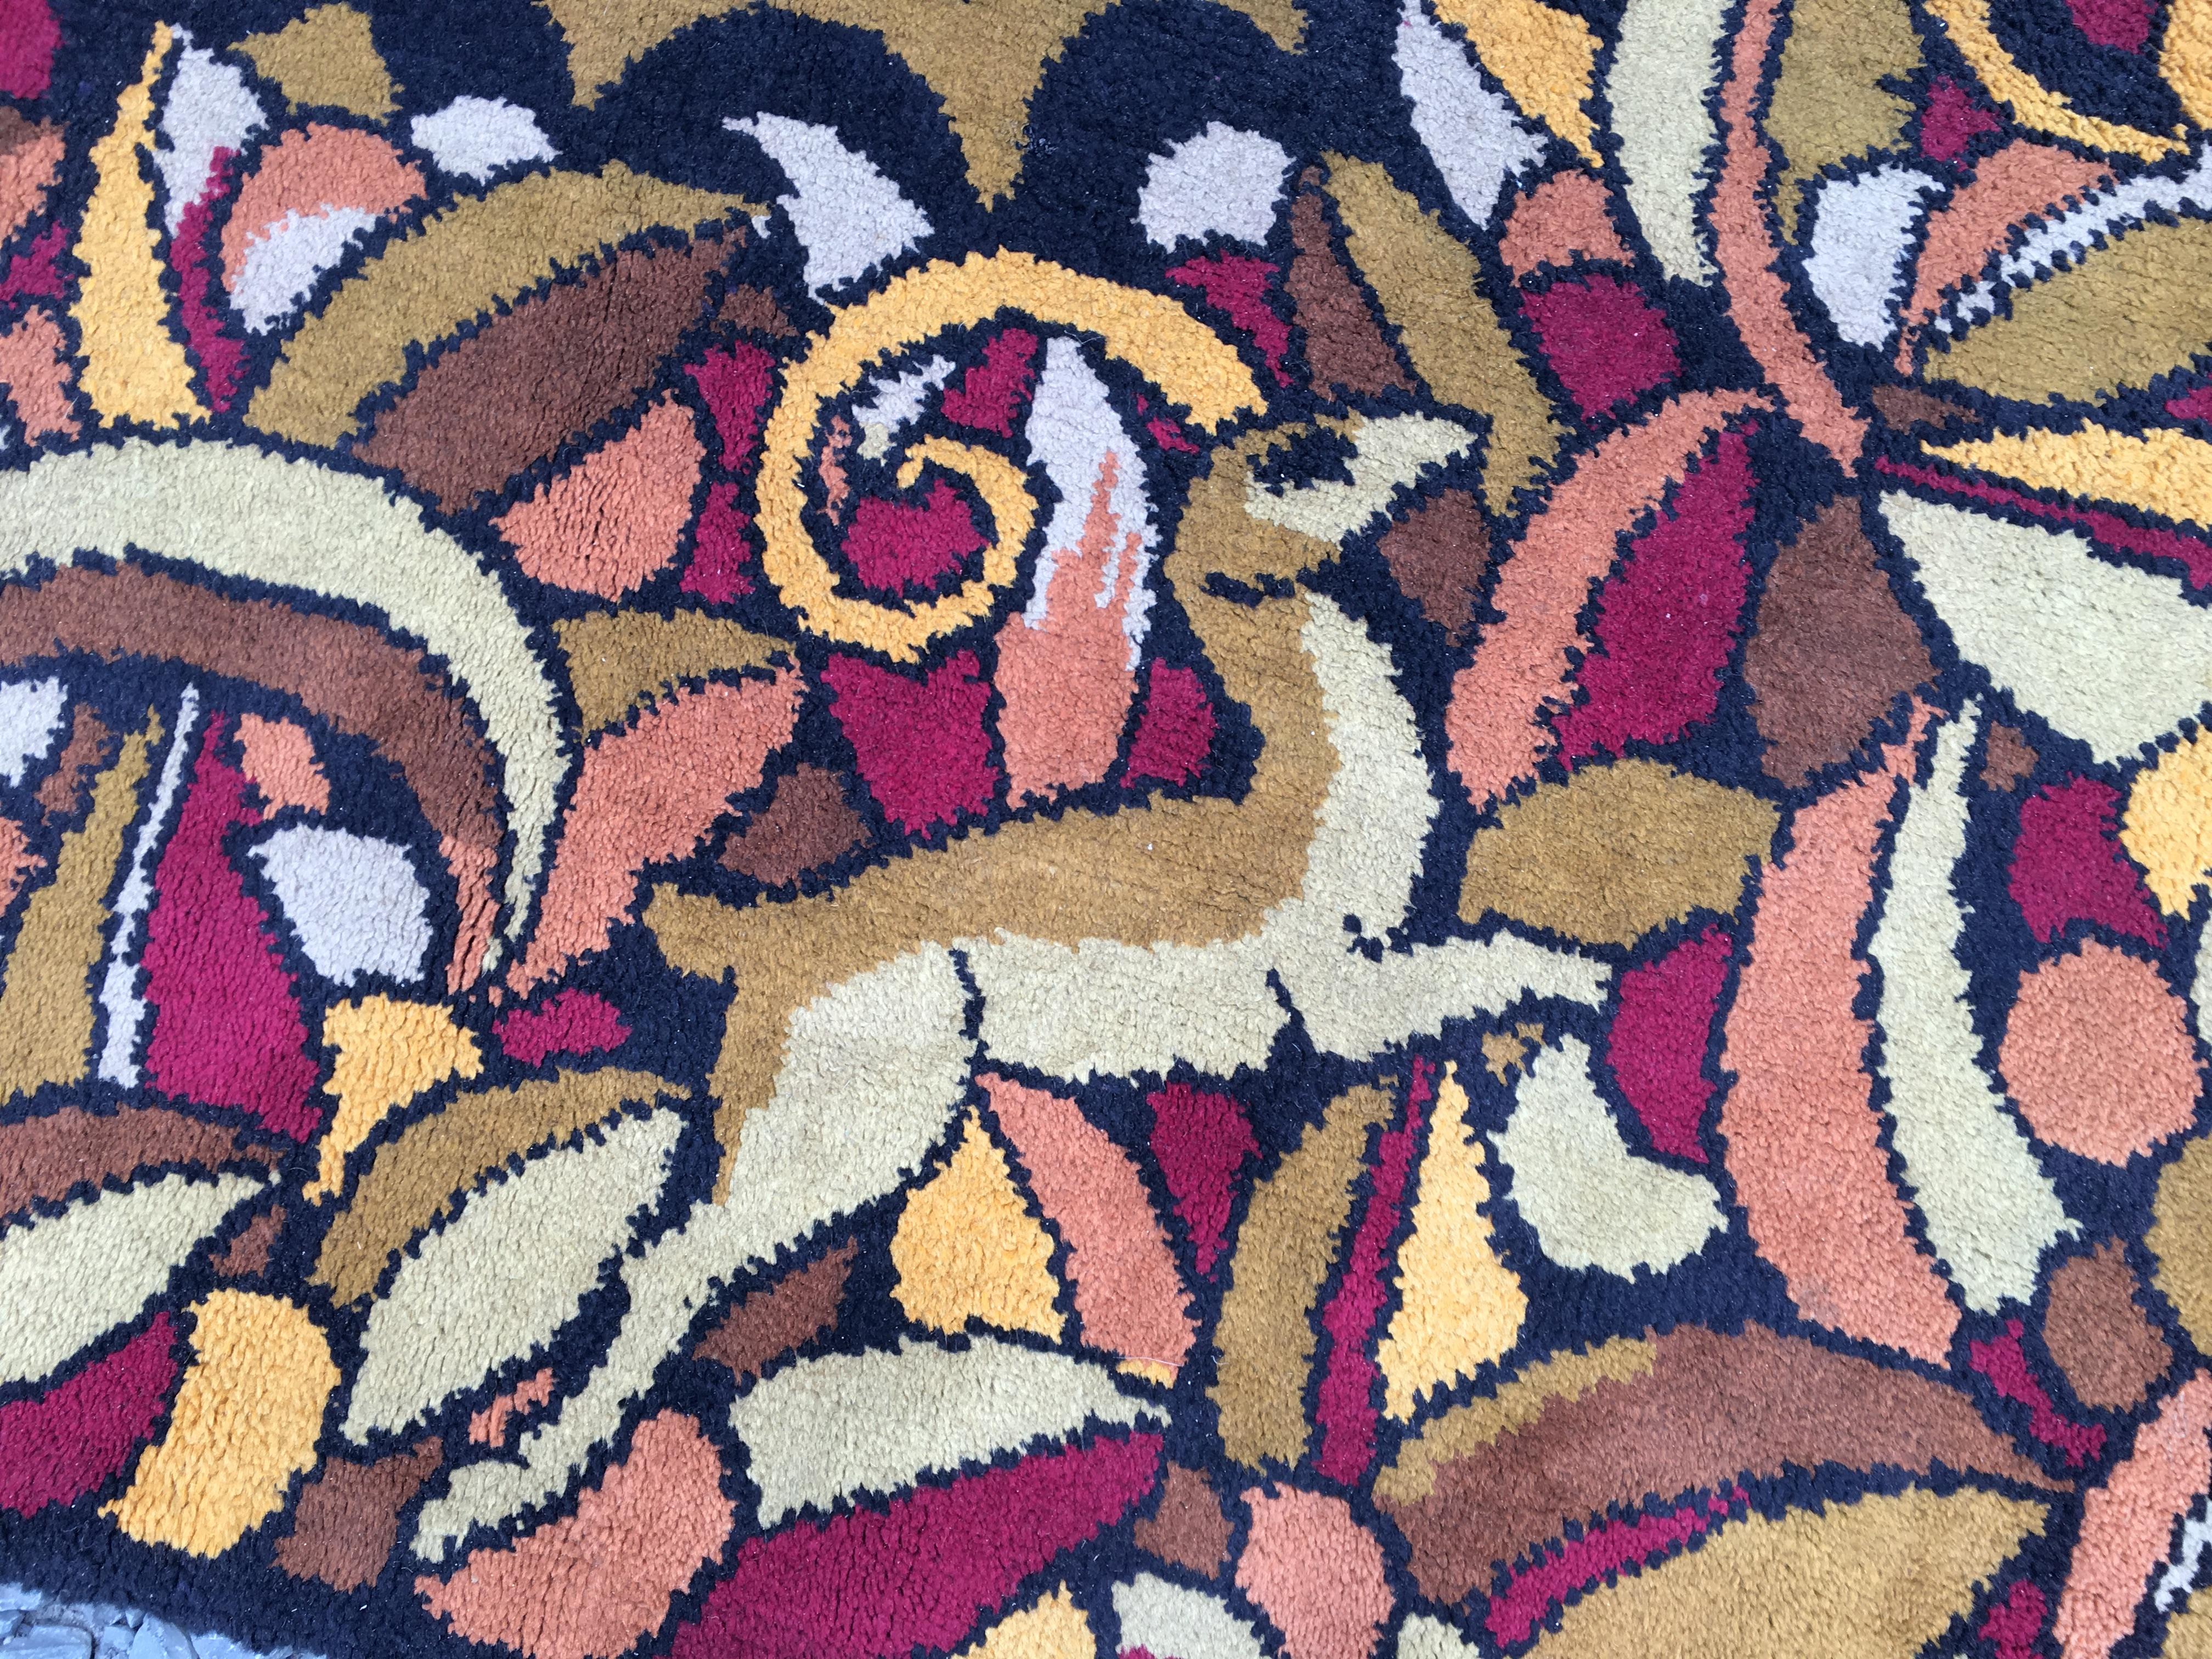 1930's art deco carpet